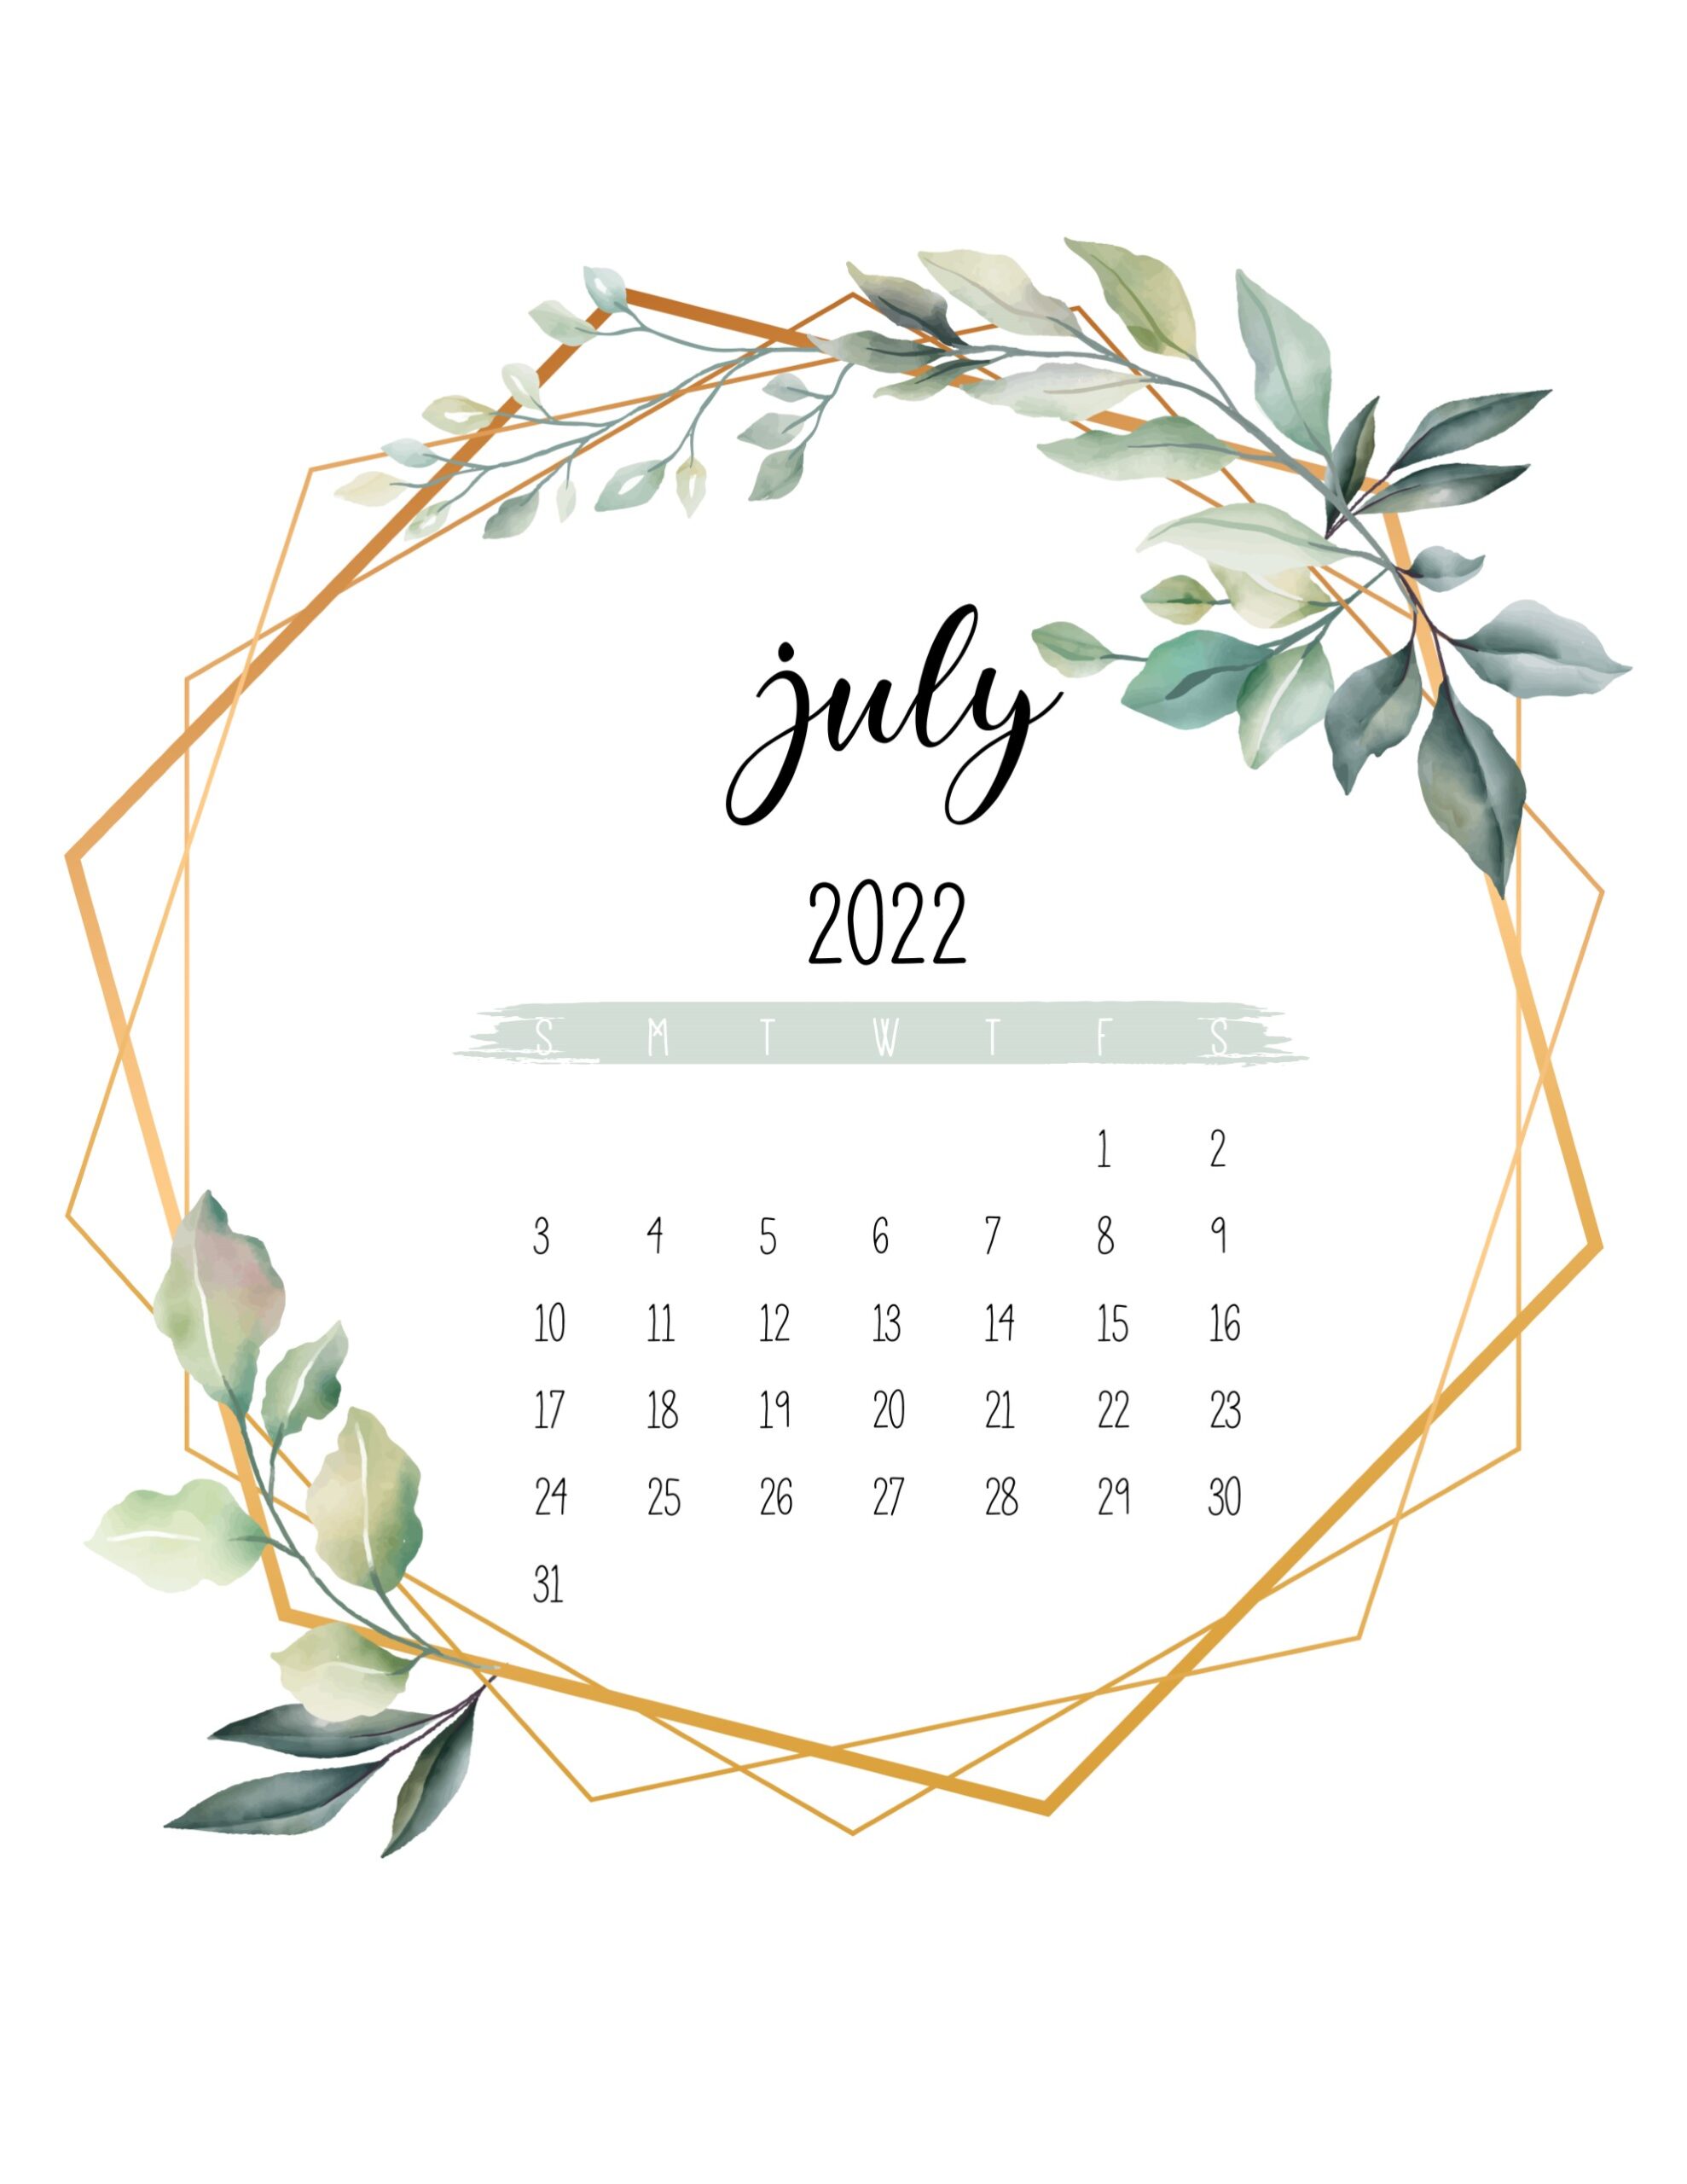 Calendario 2022 jardim botanico julho